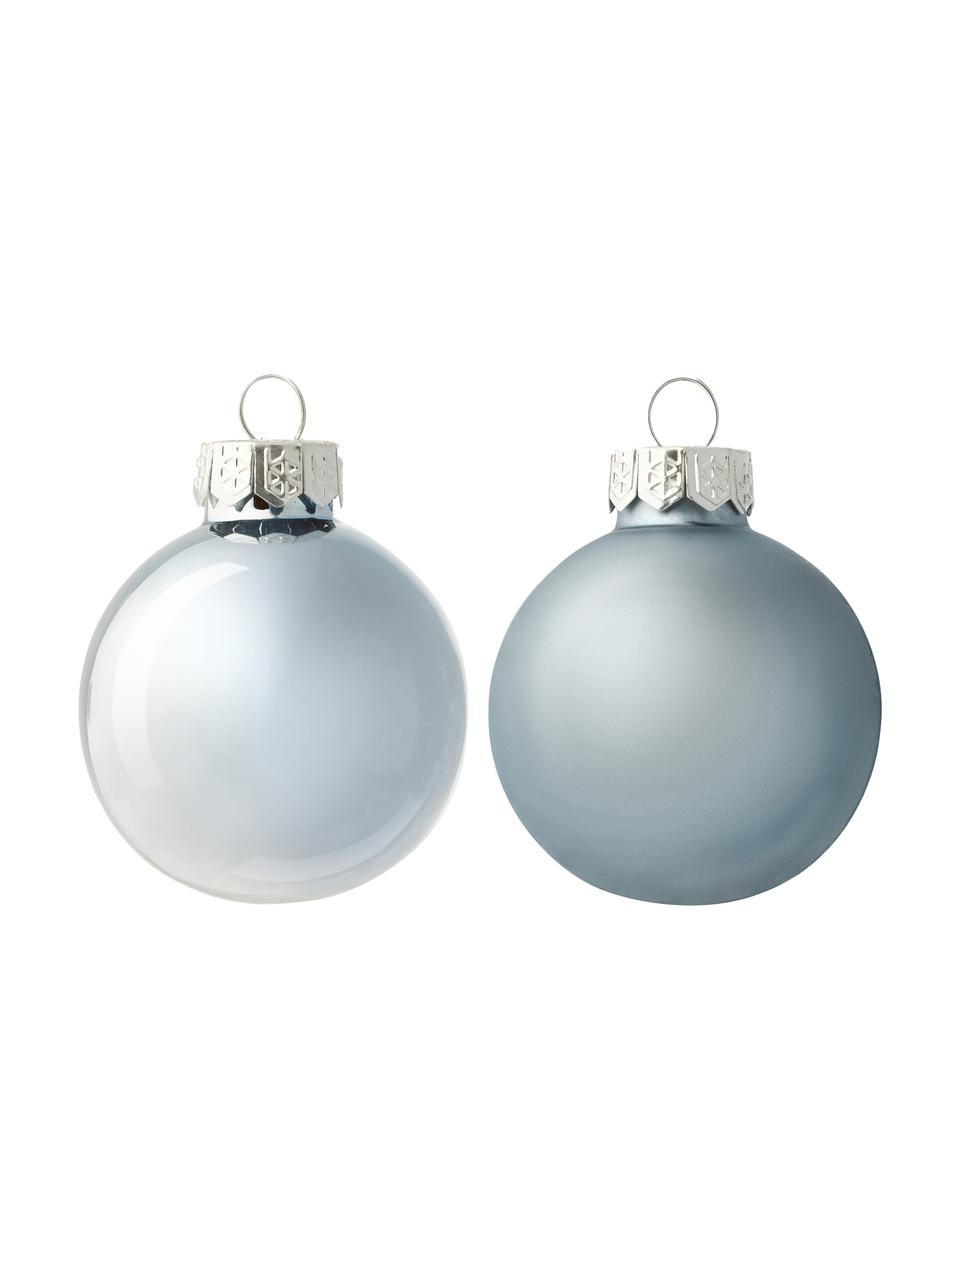 Bolas de Navidad Evergreen Ø 4 cm, 16 uds., Azul claro, Ø 4 cm